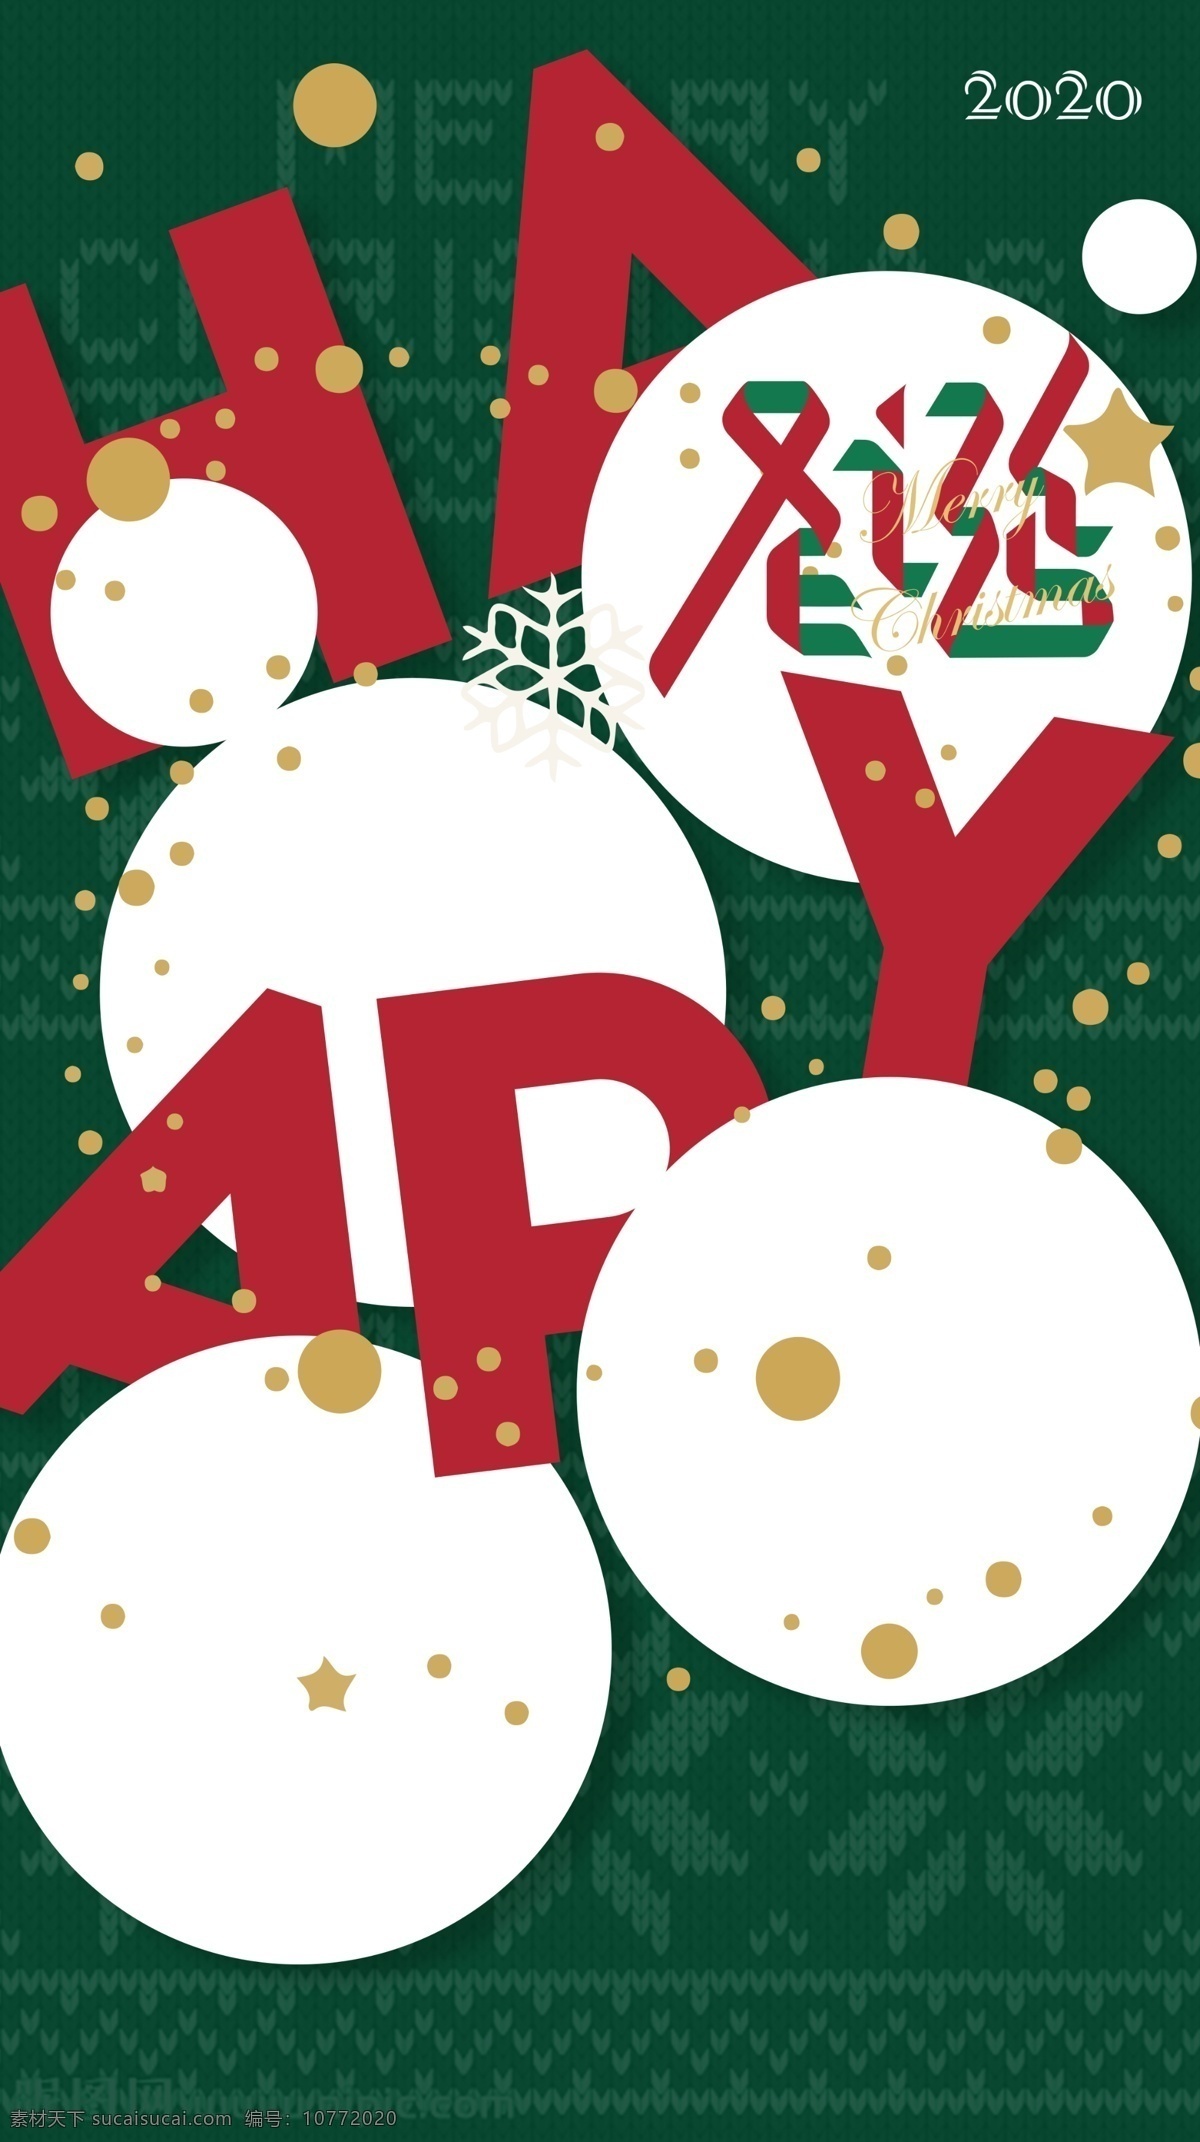 圣诞节 可爱 海报 圣诞 圆点 圣诞节快乐 毛衣纹 红绿 节日 气氛 设计海报 文化艺术 节日庆祝